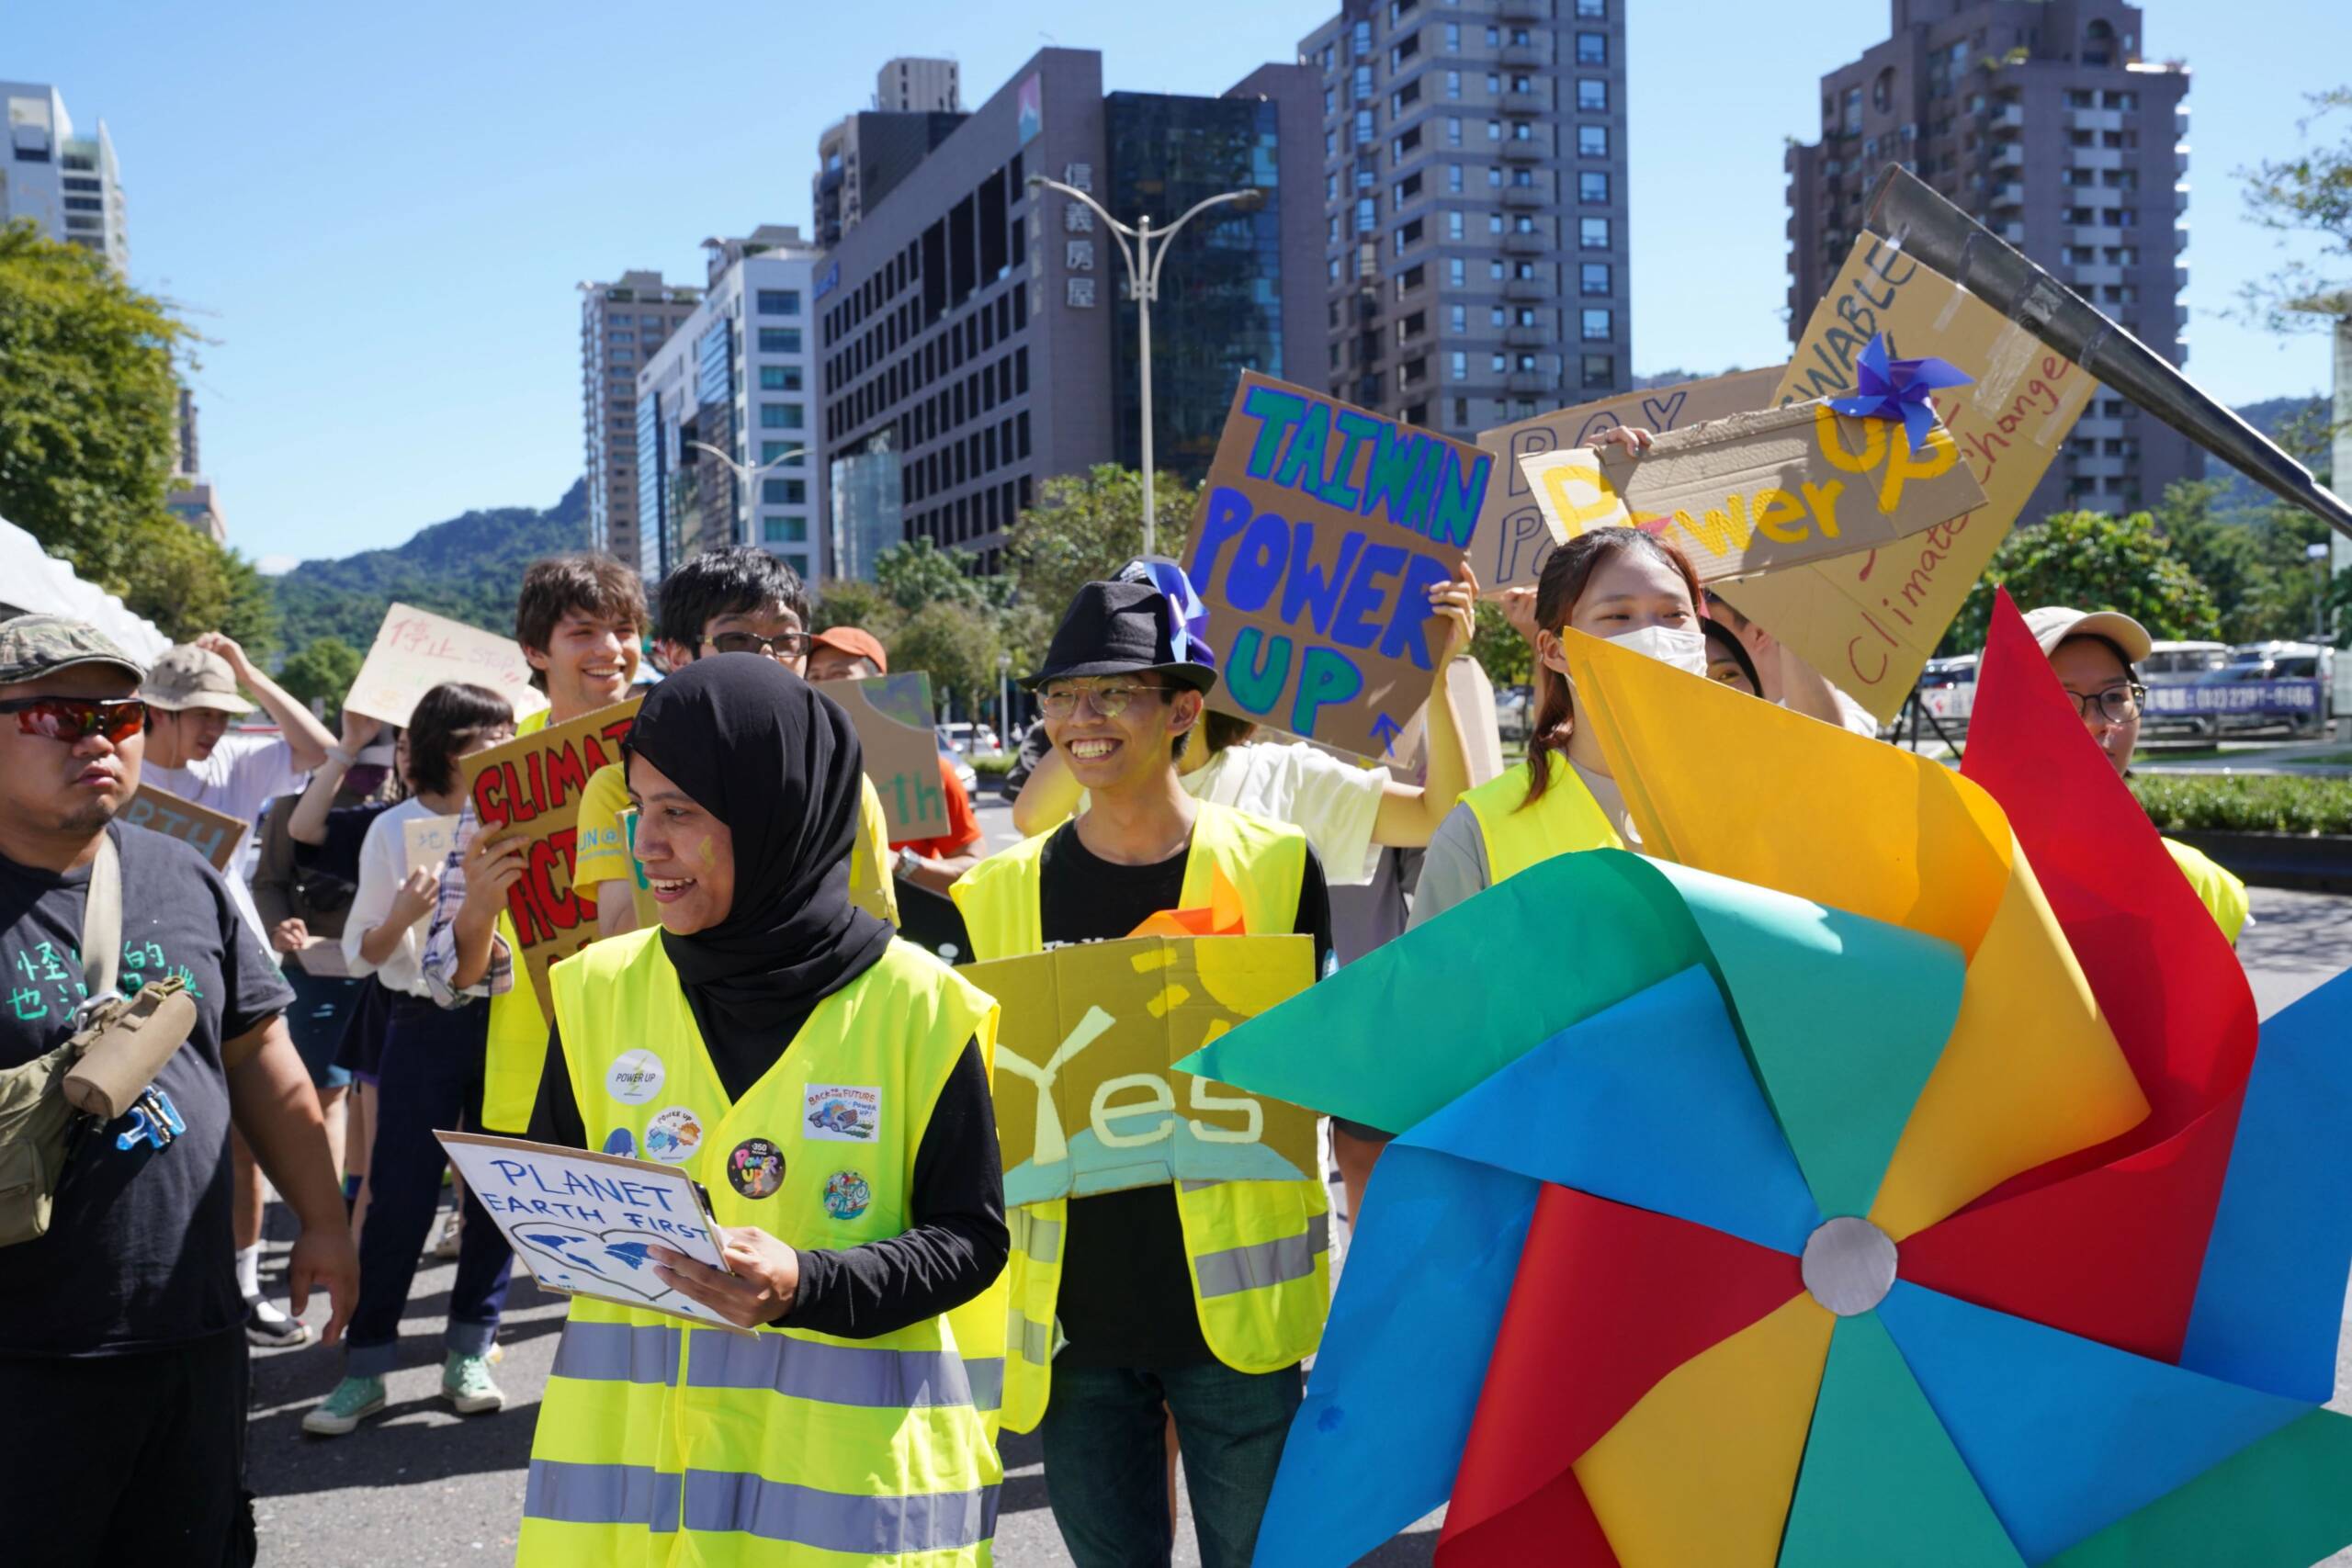 Taipei, Taiwan, le 4 novembre : une parade menée par des volontaires et des groupes de jeunes attire l'attention sur la nécessité d'une transition équitable vers les énergies renouvelables. Crédit photo : Naomi Goddard